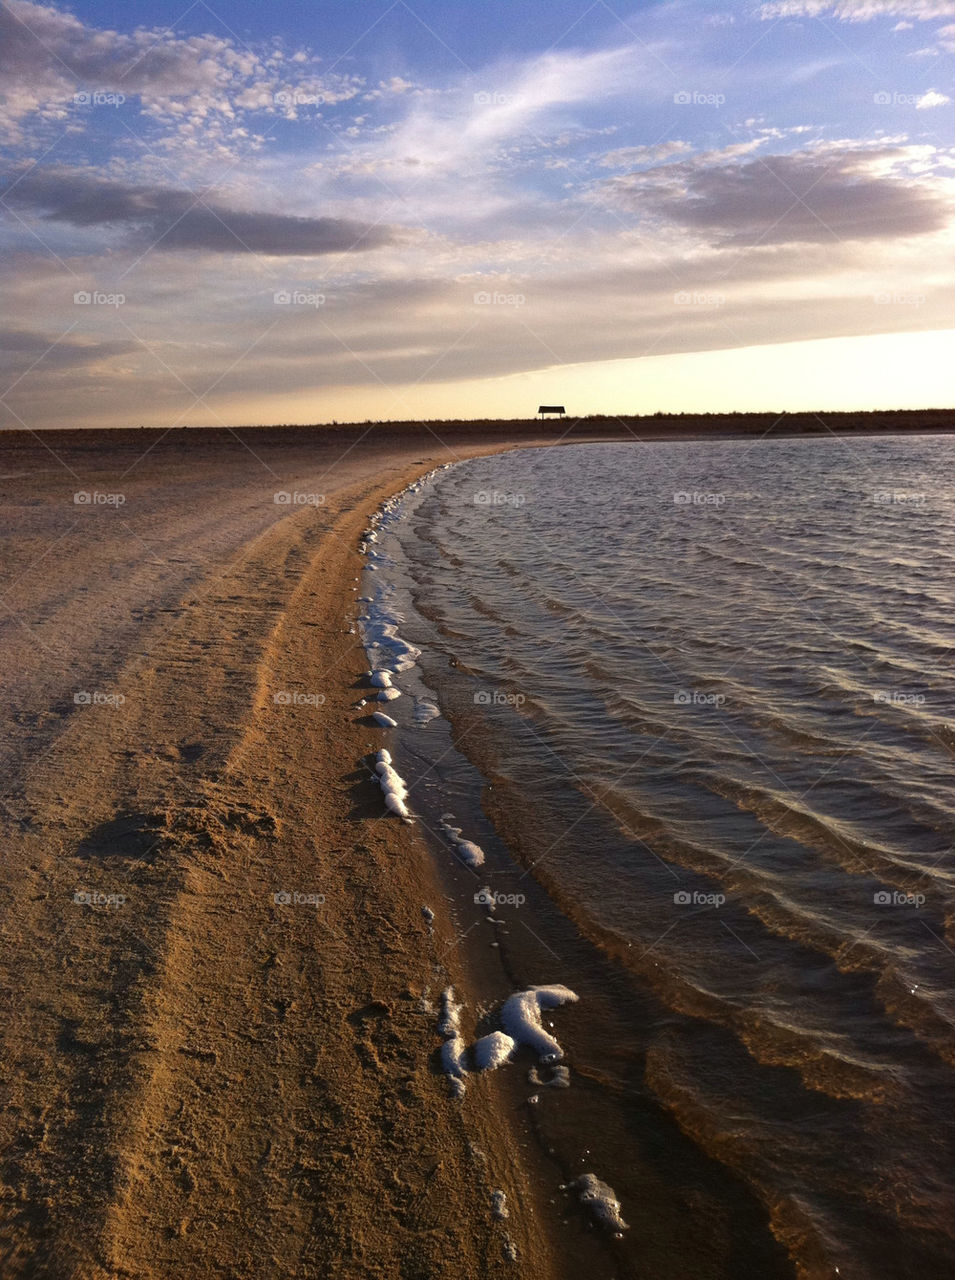 sunset lake desert salt by frutimecanik